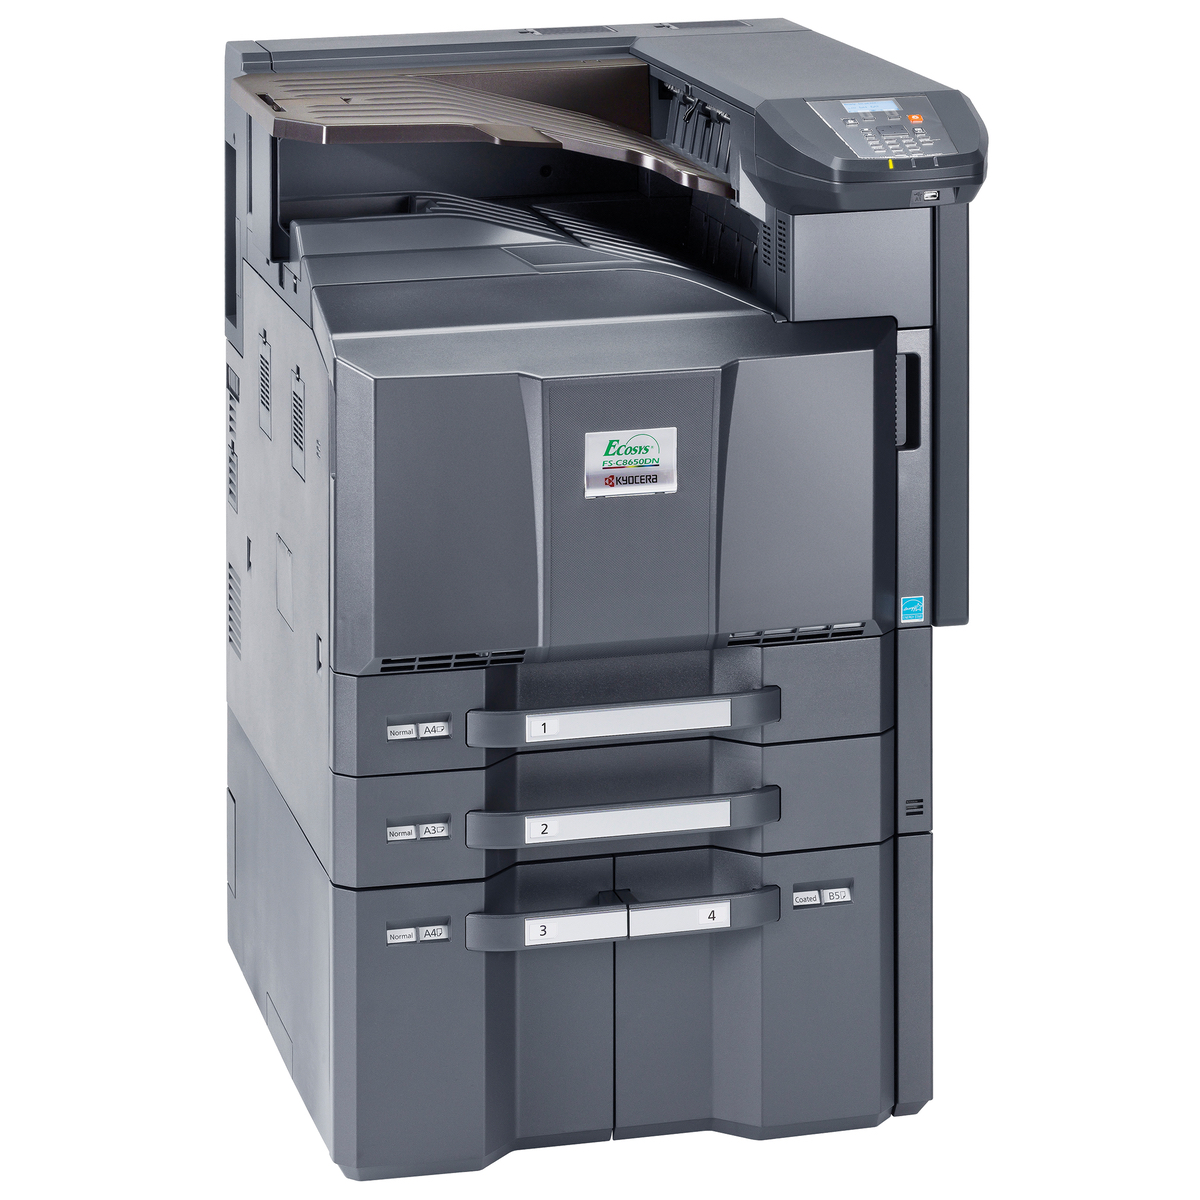 Kyocera Printers:  The Kyocera FS-C8650DN Printer